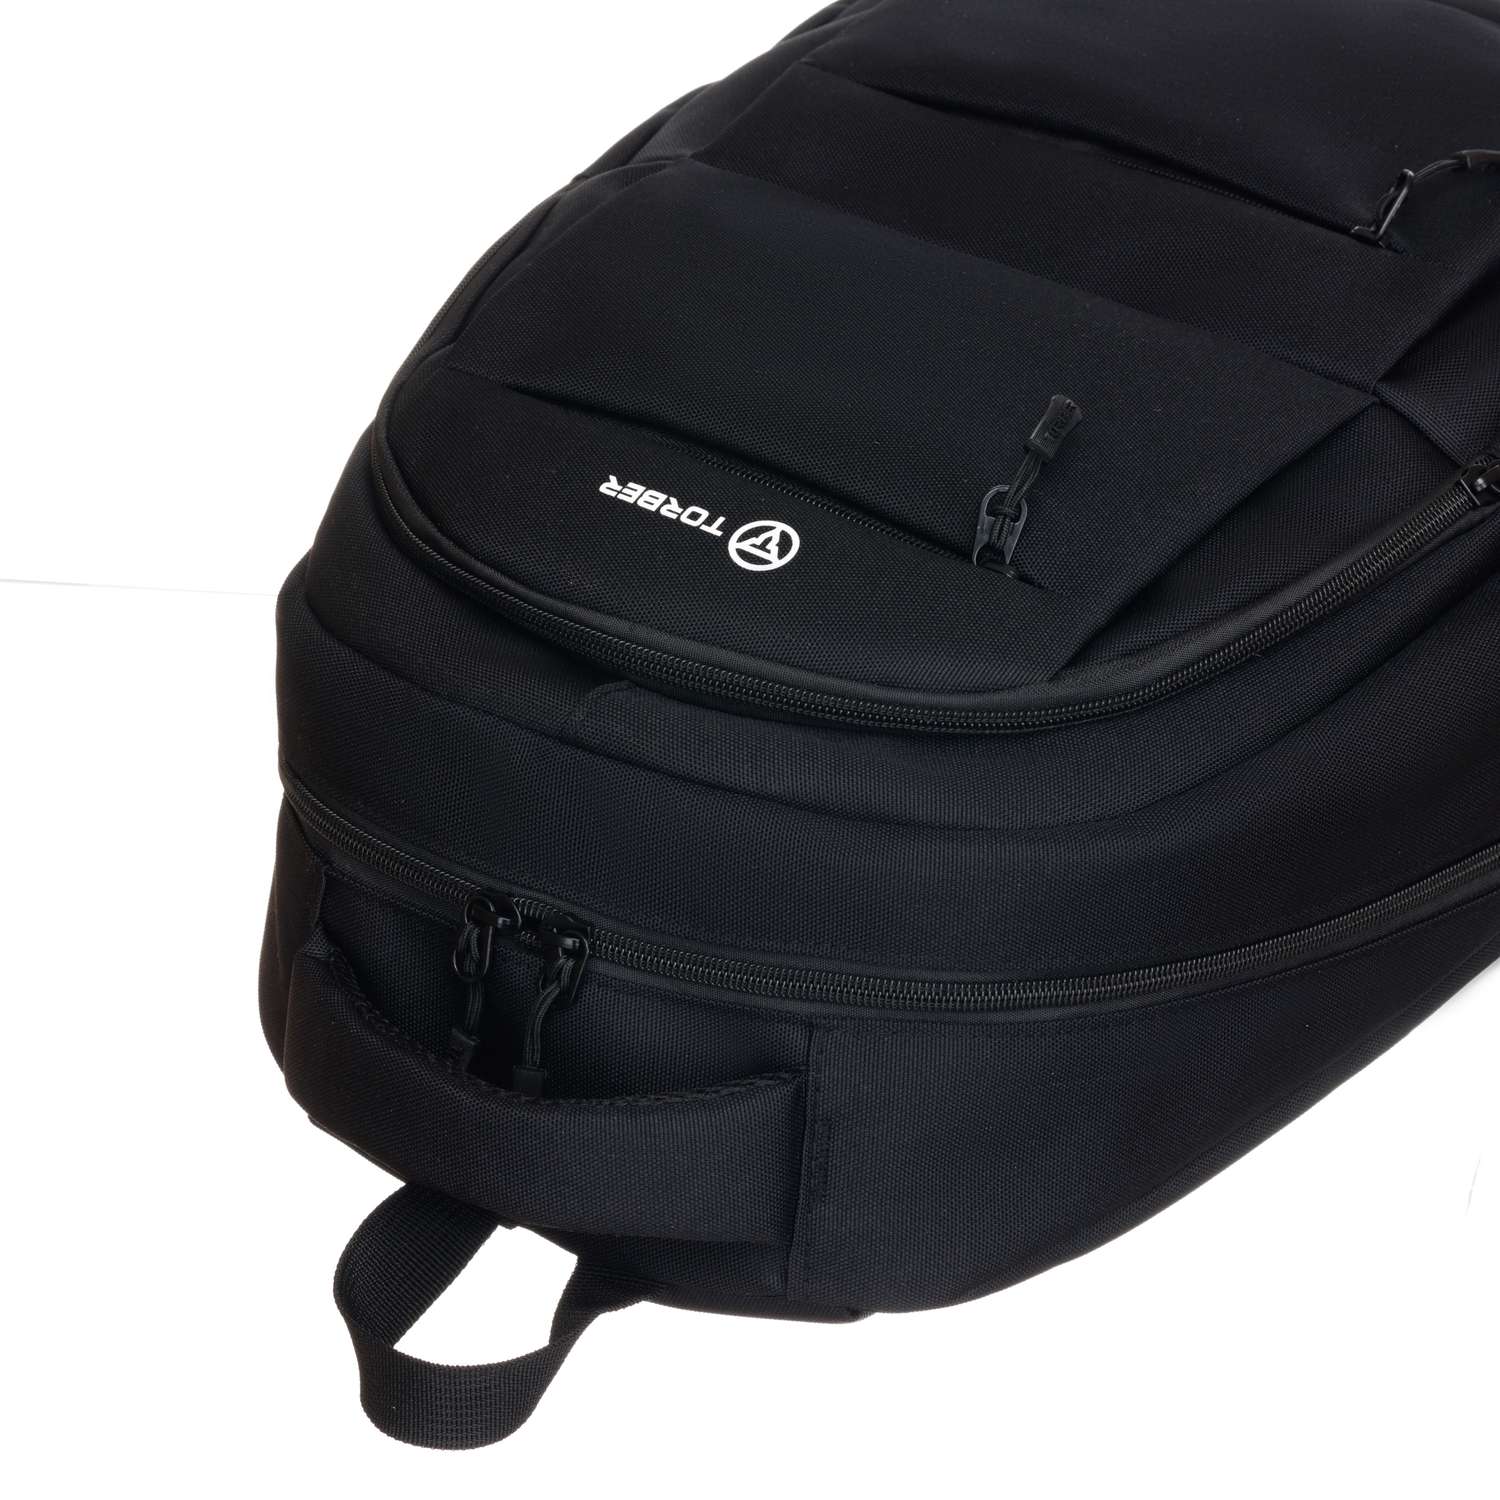 Рюкзак TORBER CLASS X черный и мешок для сменной обуви - фото 9